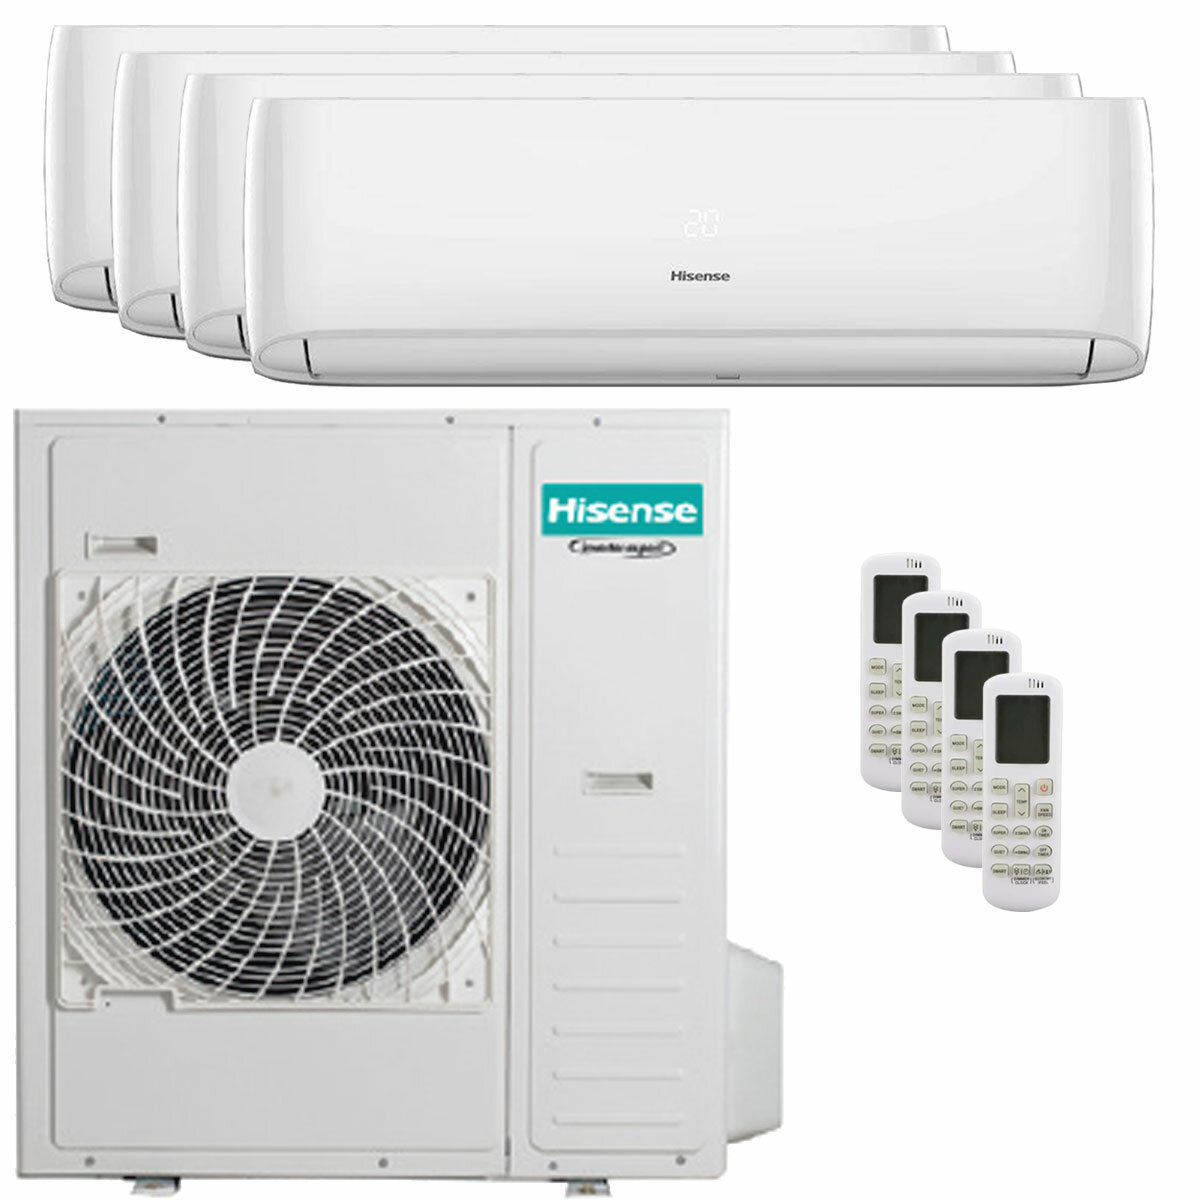 Hisense Hi-Comfort quadri split air conditioner 9000 + 9000 + 9000 + 24000 BTU wifi inverter outdoor unit 12.5 kW